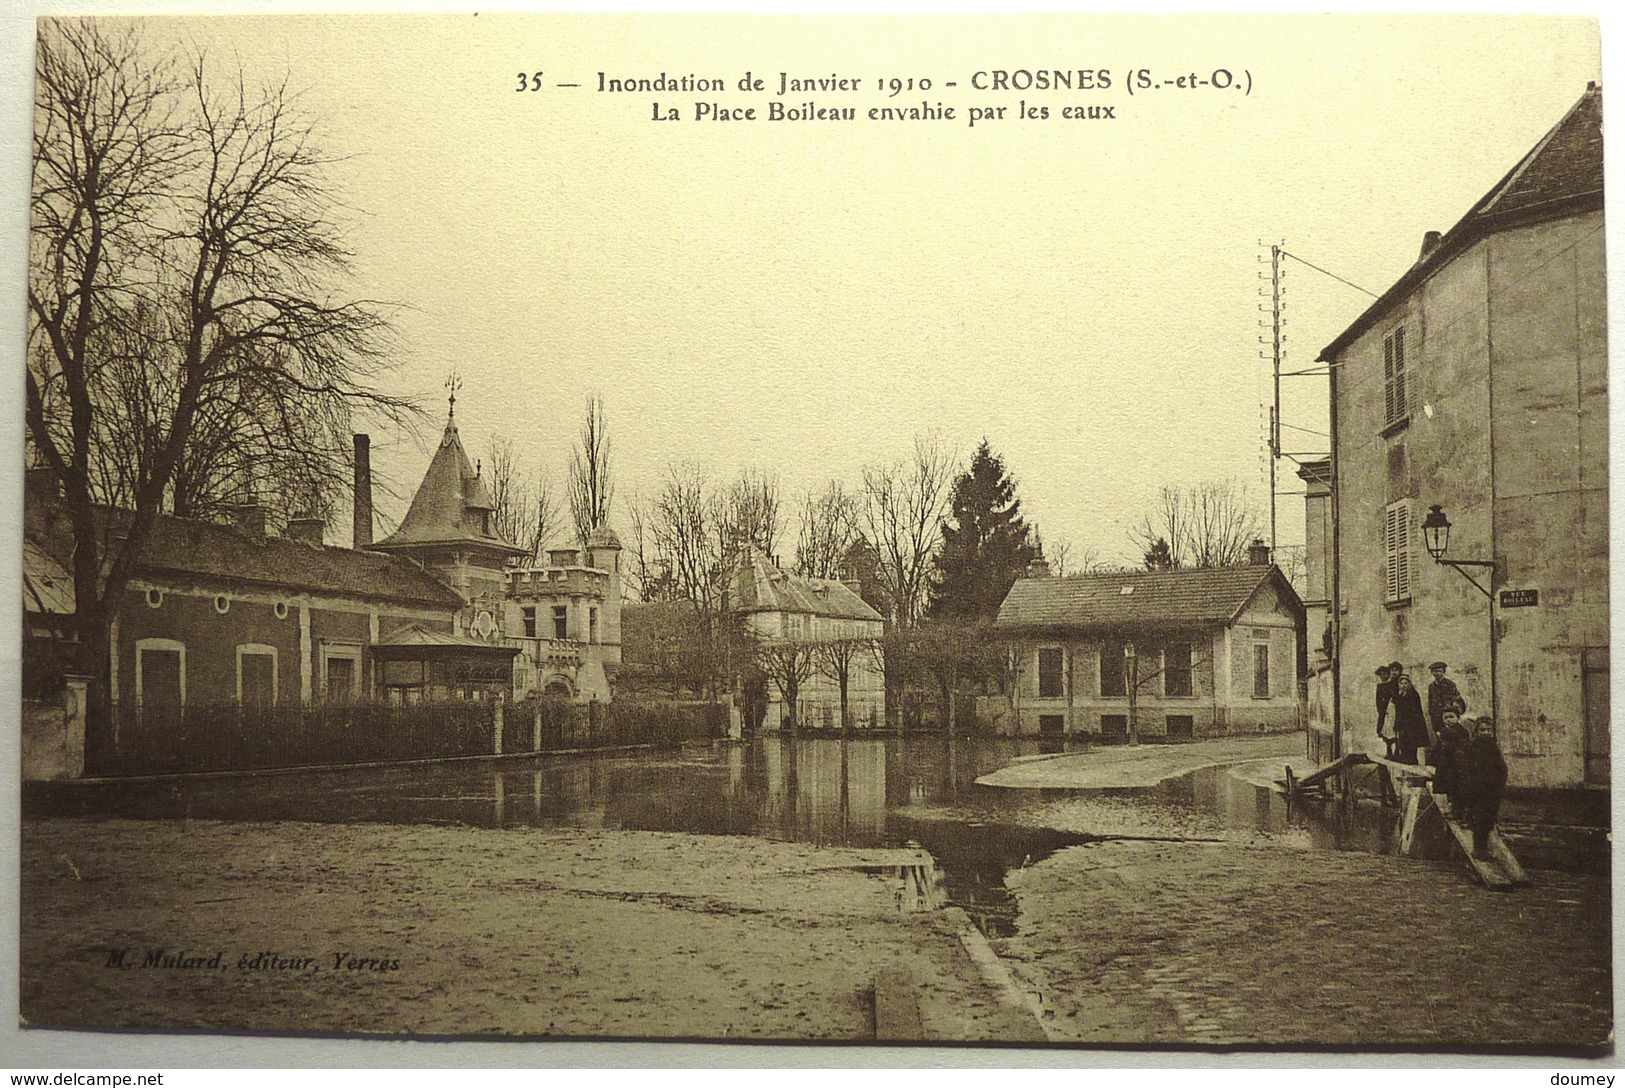 INONDATIONS DE JANVIER 1910 - LA PLACE BOILEAU ENVAHIE PAR LES EAUX - MONTGERON - Crosnes (Crosne)